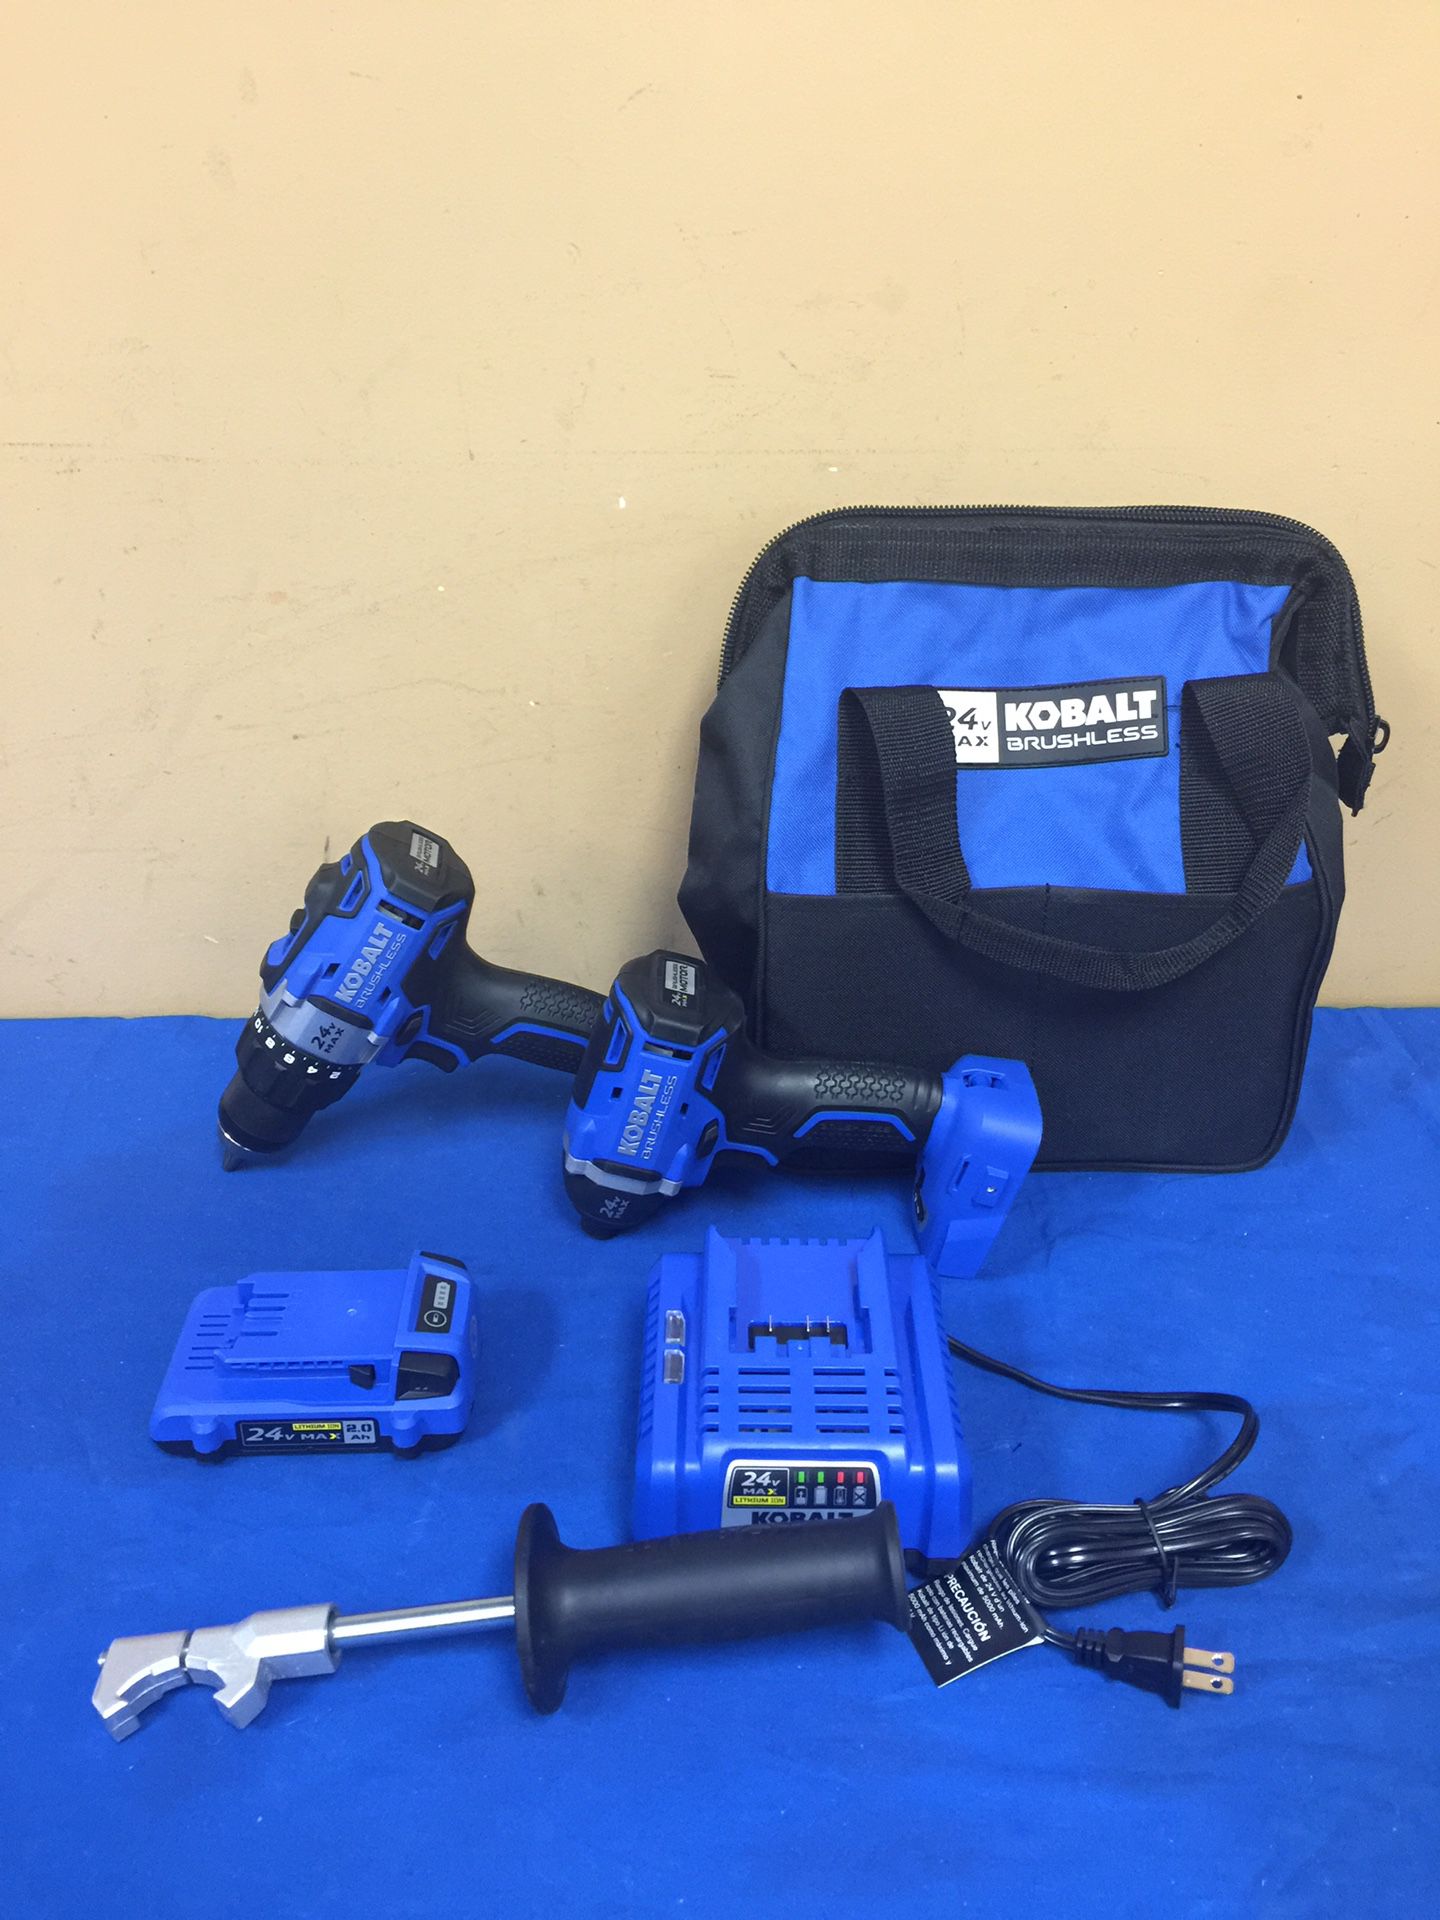 Kobalt 24V Max Brushless 1/2” Drill and 1/4” Impact Driver Set